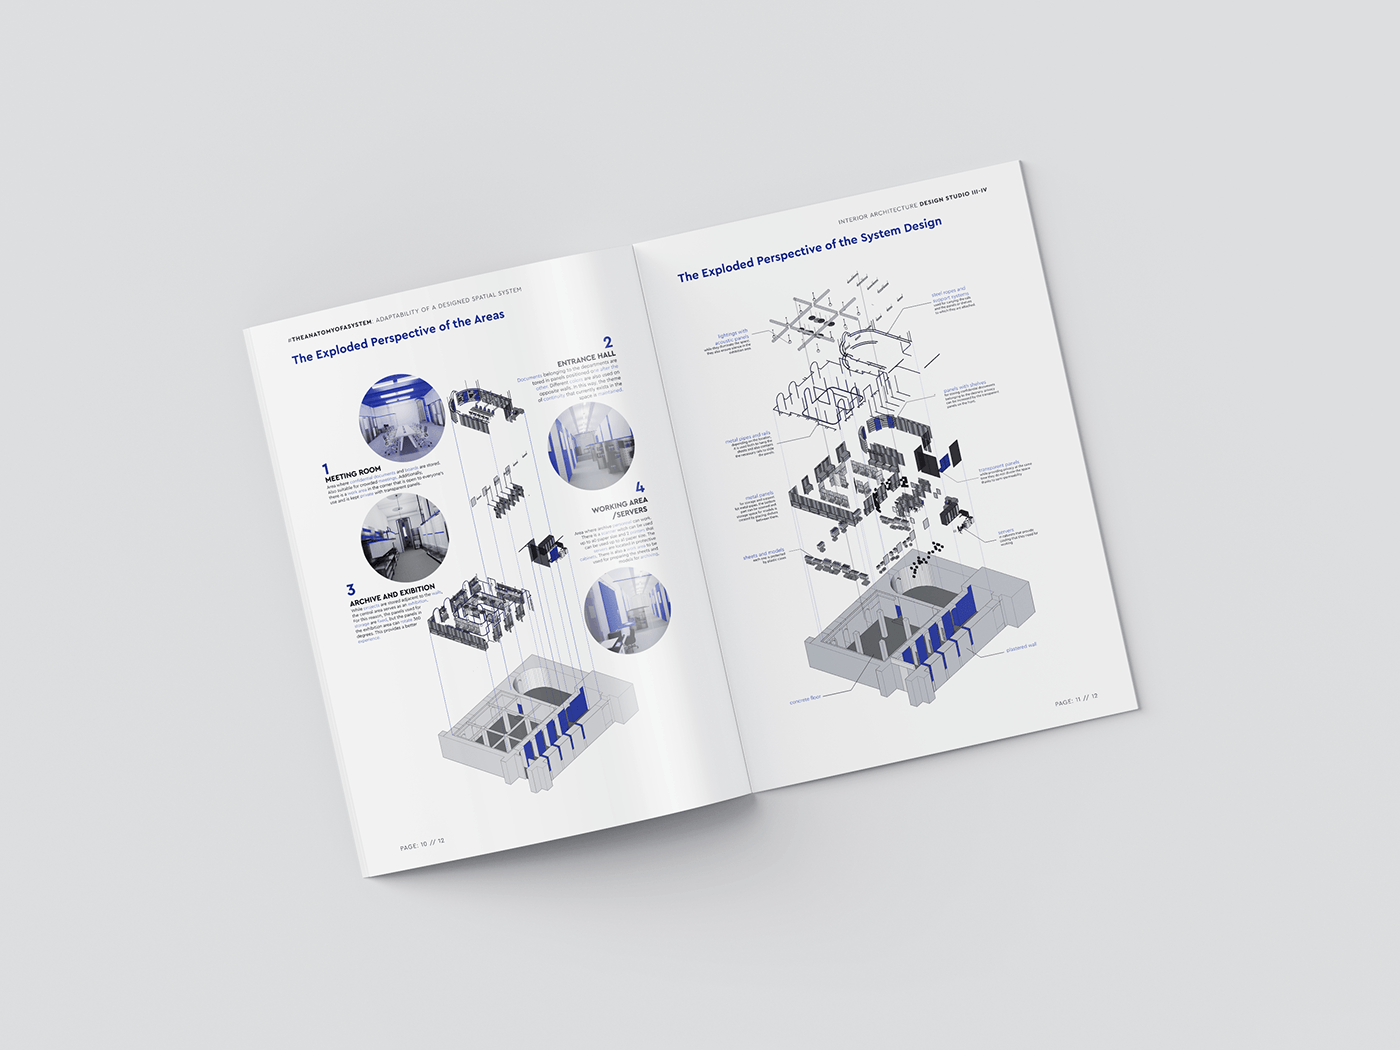 design architecture interior design  interiorarchitecture Project submission graphic design  indesign template brochure